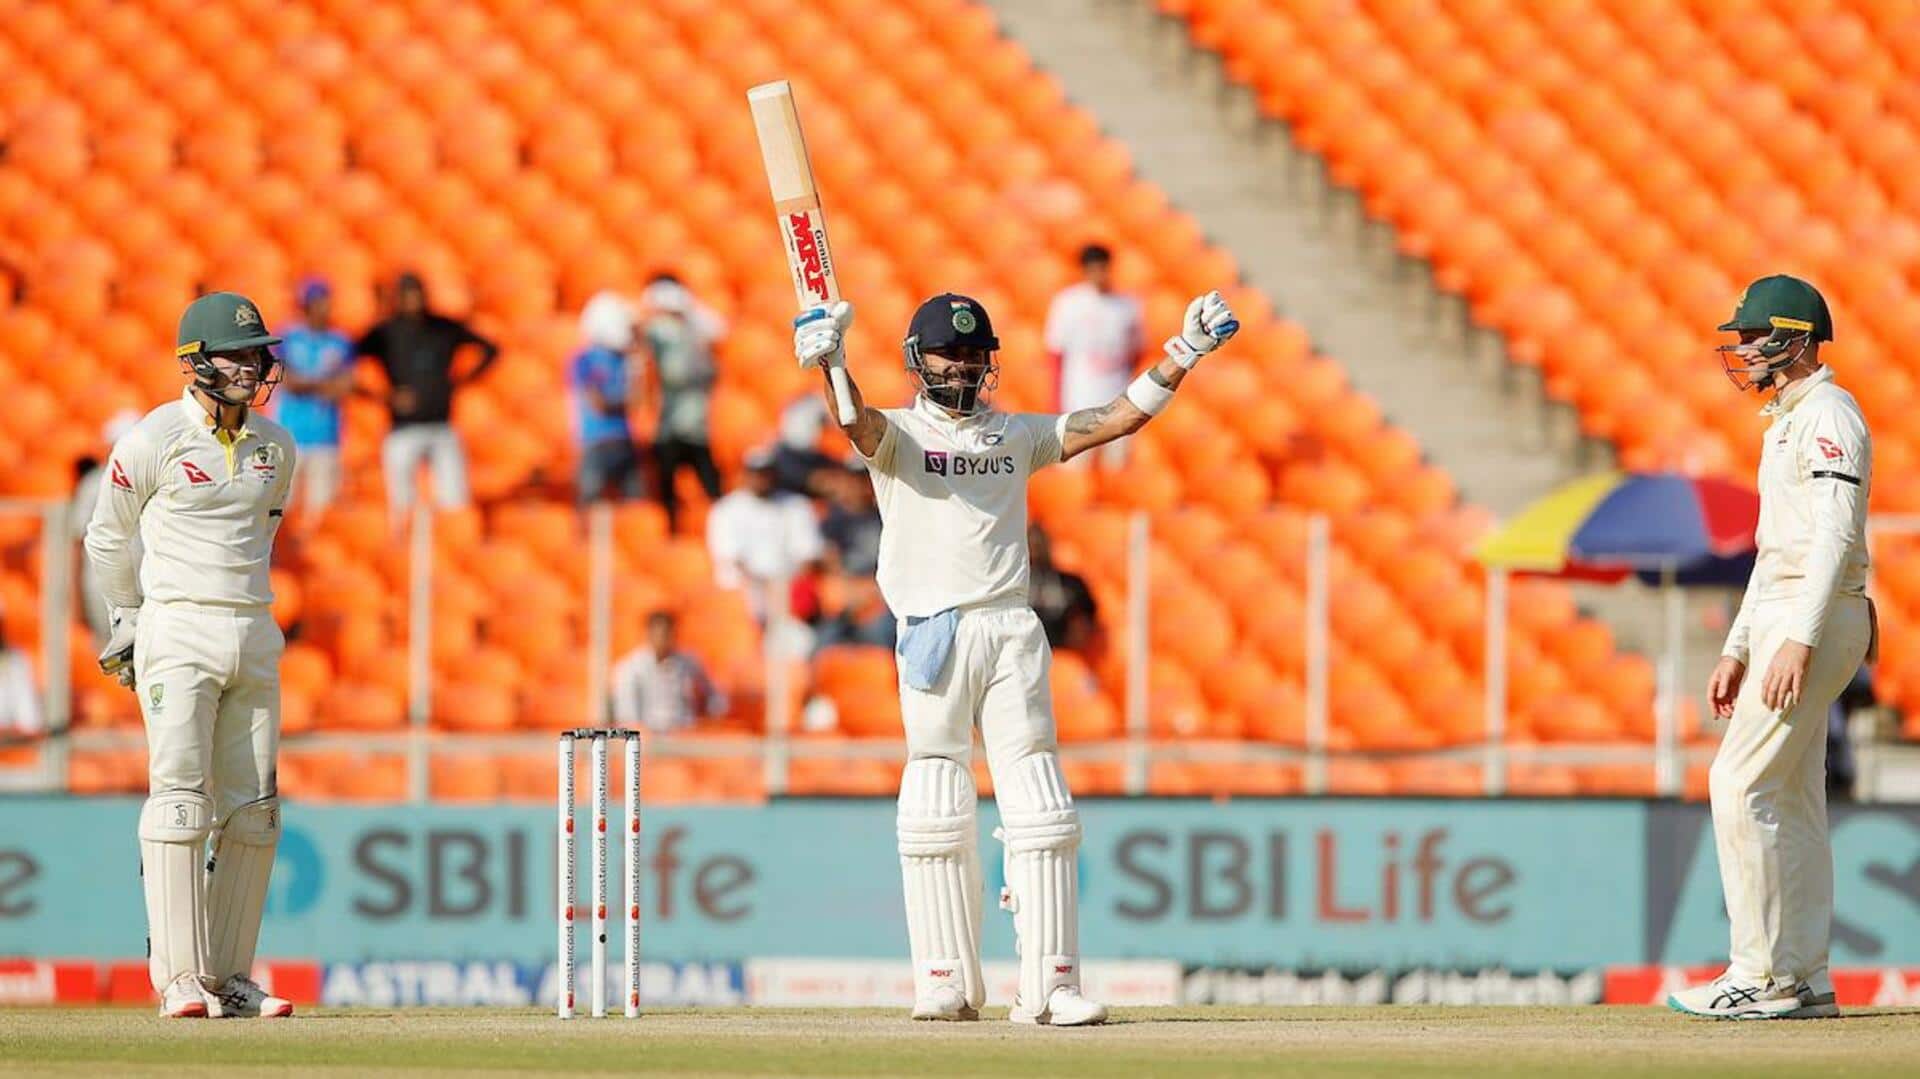 लगातार चौथी बार भारत के खिलाफ टेस्ट सीरीज हारी ऑस्ट्रेलिया, नाम हुआ शर्मनाक रिकॉर्ड